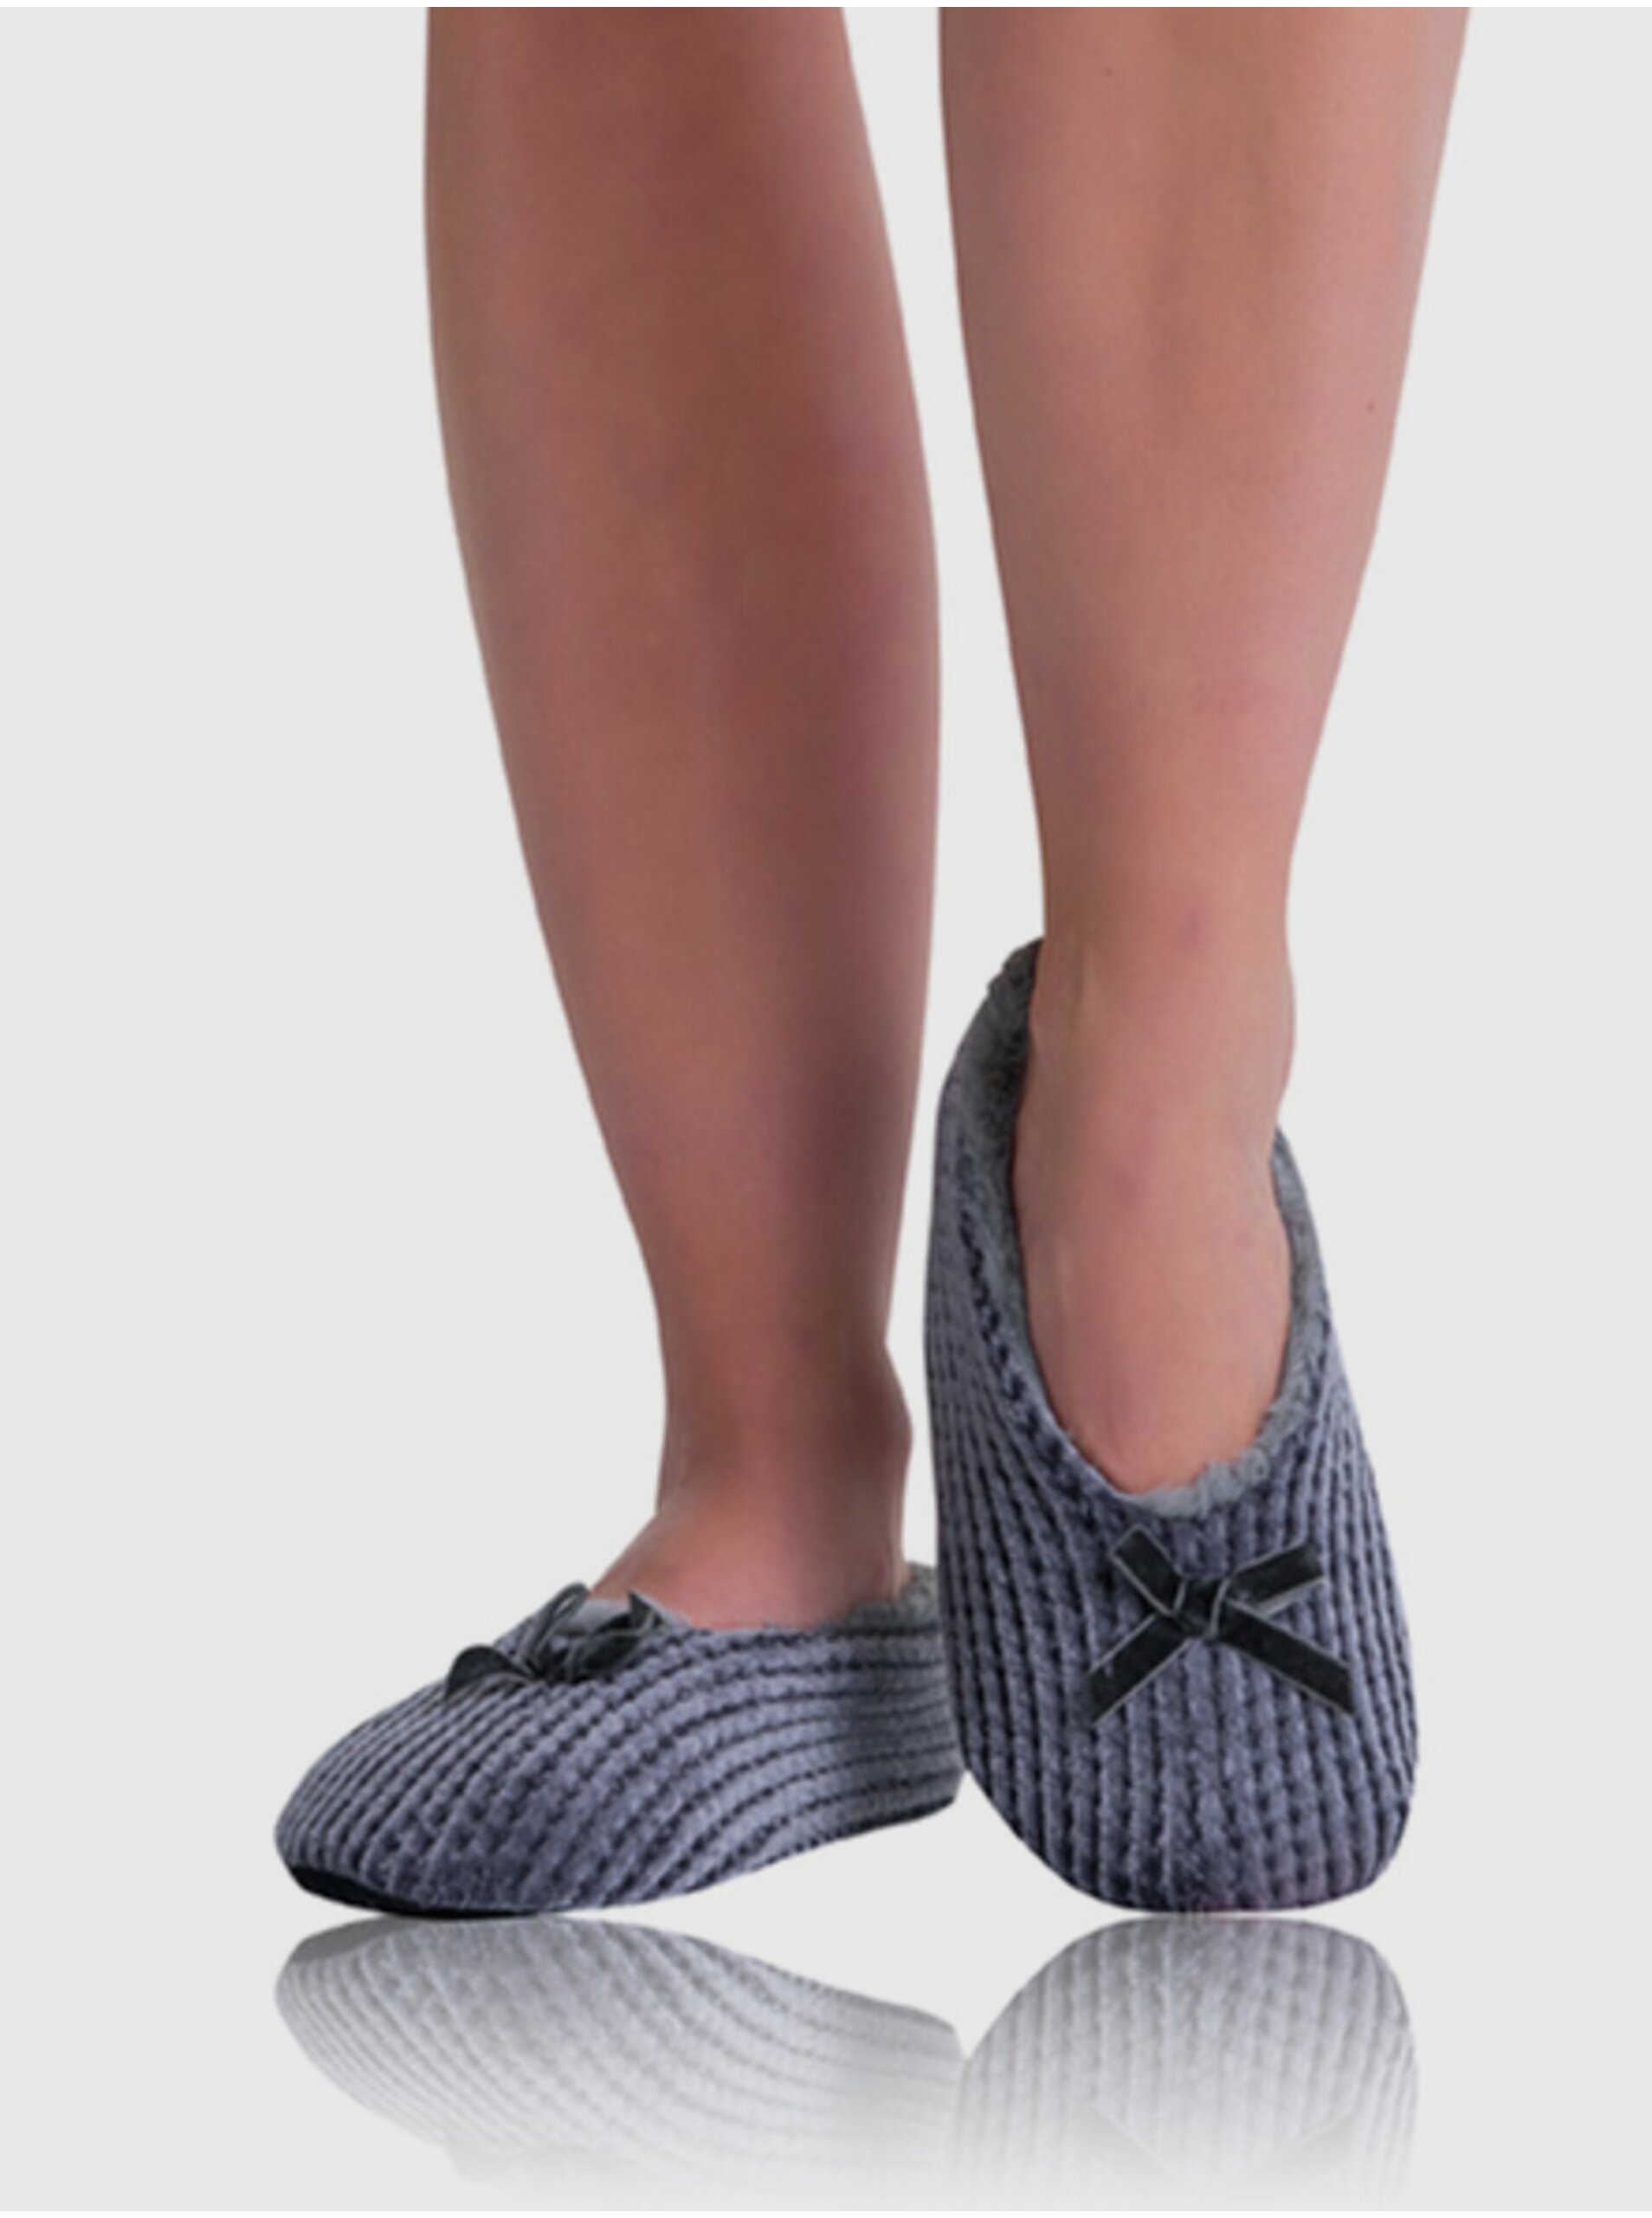 E-shop Šedé dámské domácí bačkory BELLINDA Home Shoes